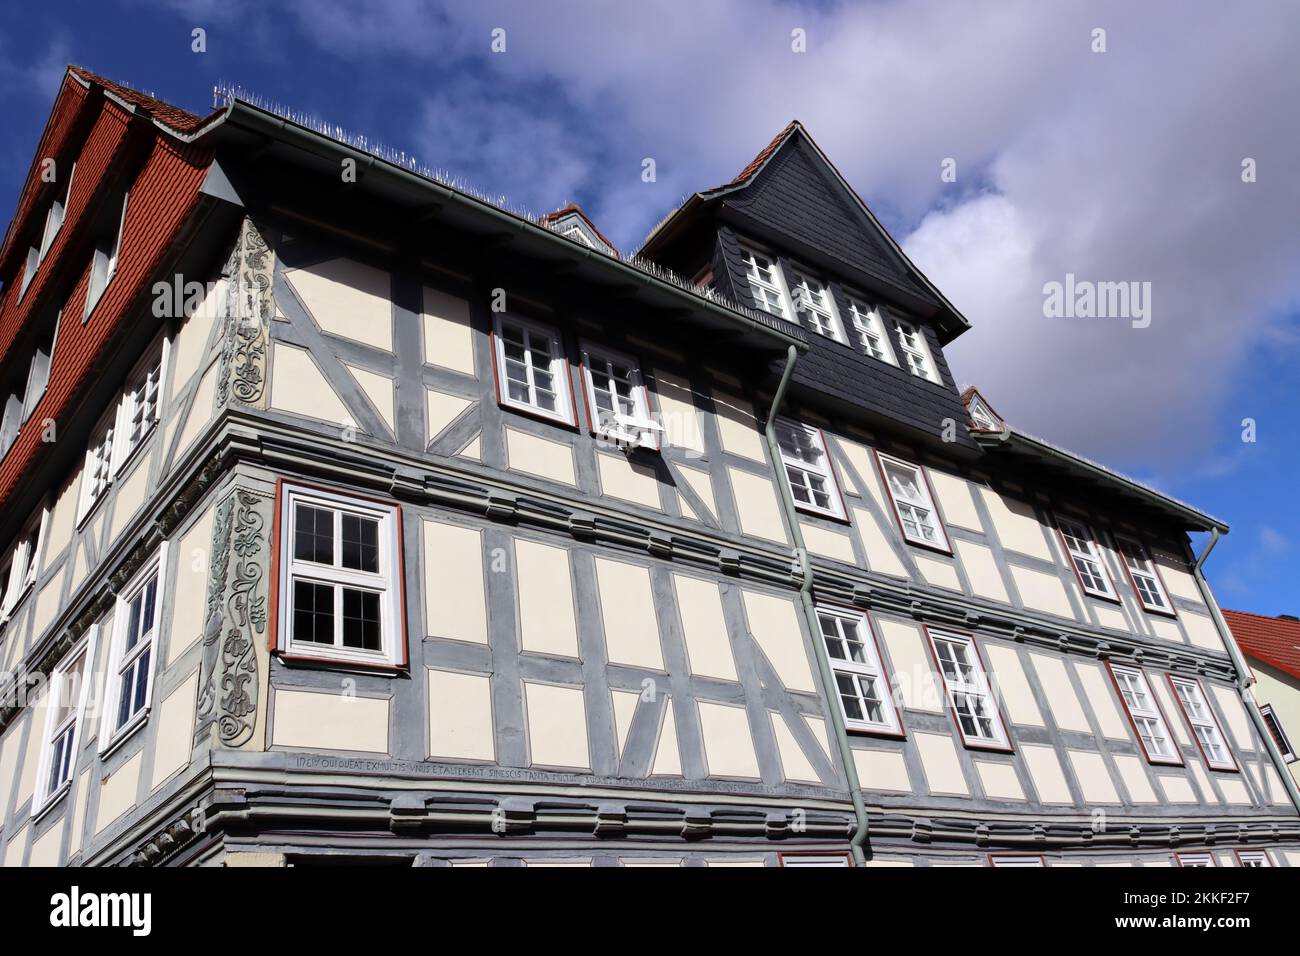 Denkmal-geschütztes Fachwerkhaus in der historischen Altstadt, Hessen, Deutschland, Grebenstein Stock Photo